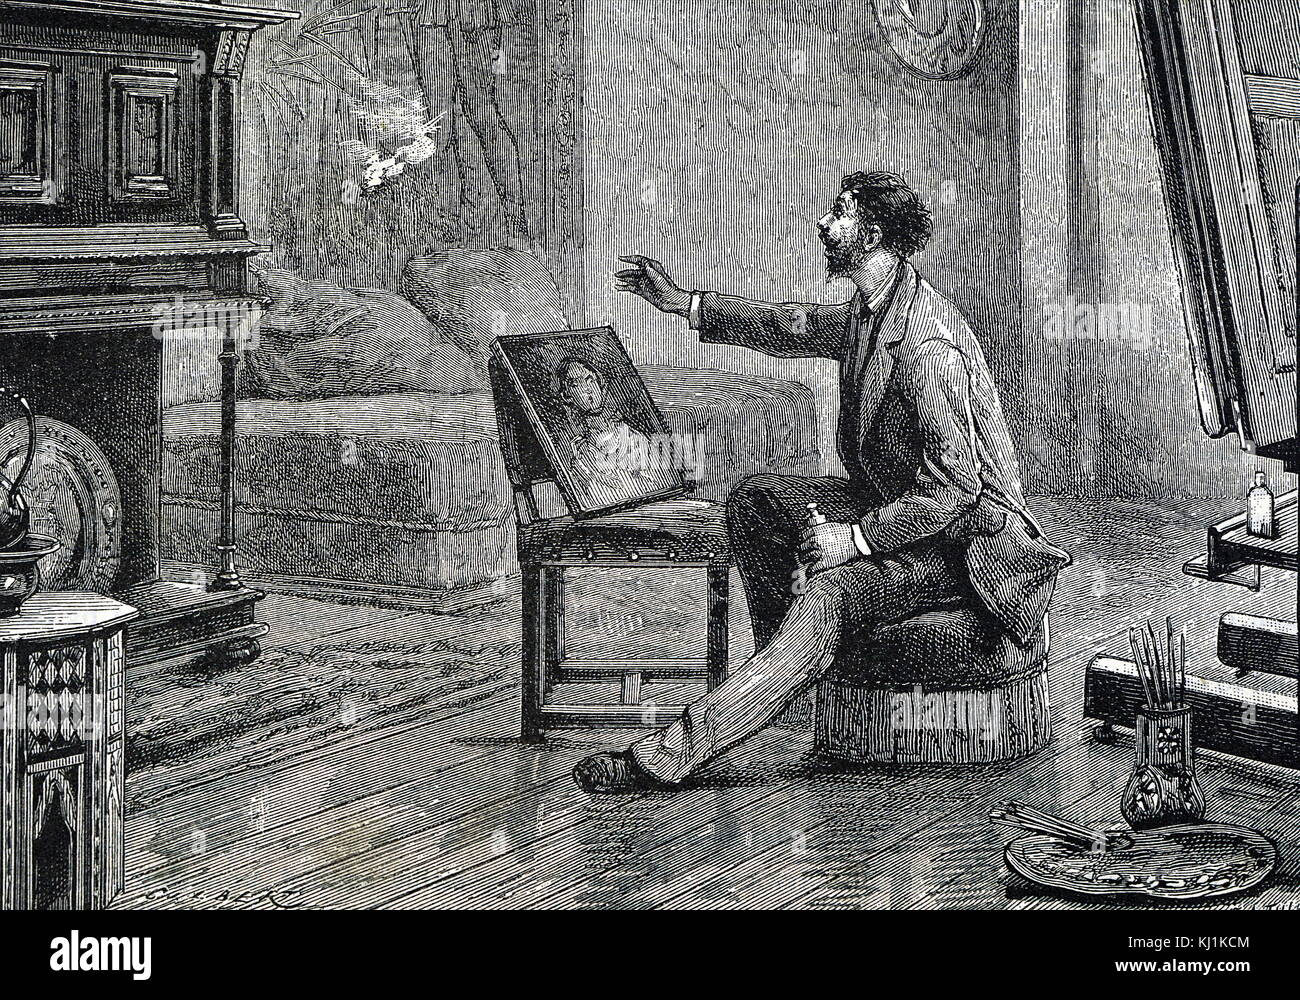 Gravur, ein Fall von Selbstentzündung. Ein Künstler rieb ein frisch lackiert Malen mit einem Pad aus Baumwolle. Wenn er warf die Baumwolle weg es ging in Flammen auf. Vom 19. Jahrhundert Stockfoto